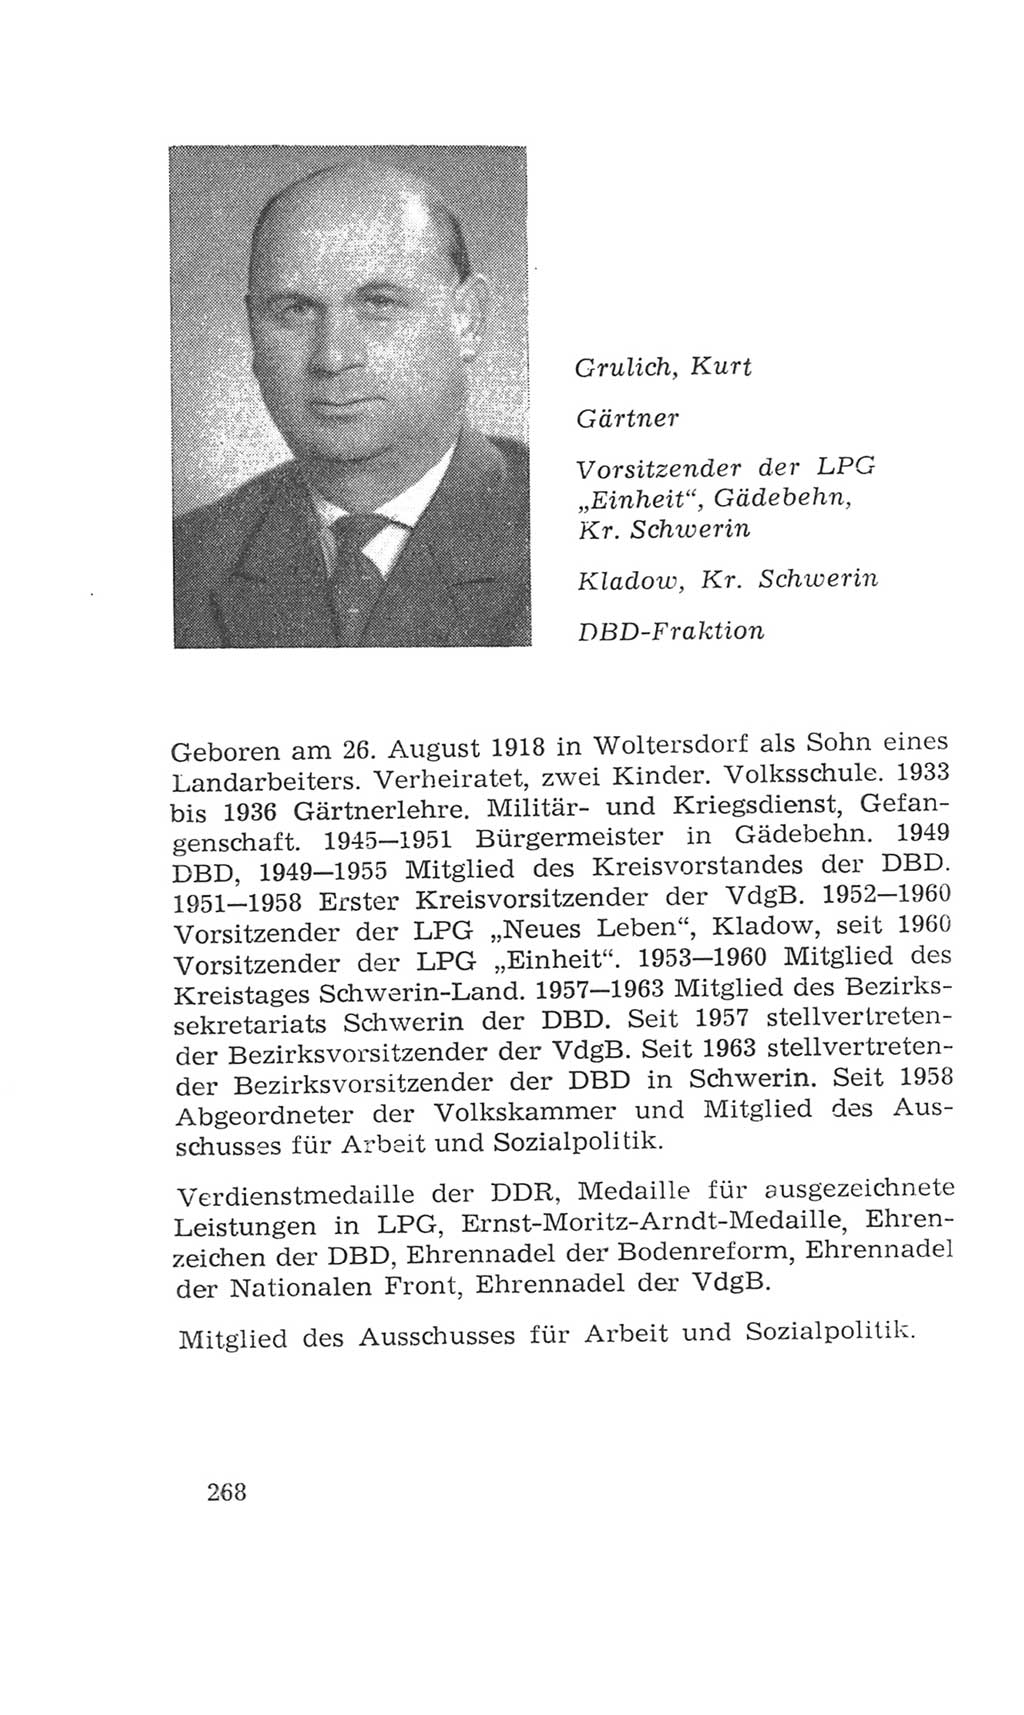 Volkskammer (VK) der Deutschen Demokratischen Republik (DDR), 4. Wahlperiode 1963-1967, Seite 268 (VK. DDR 4. WP. 1963-1967, S. 268)